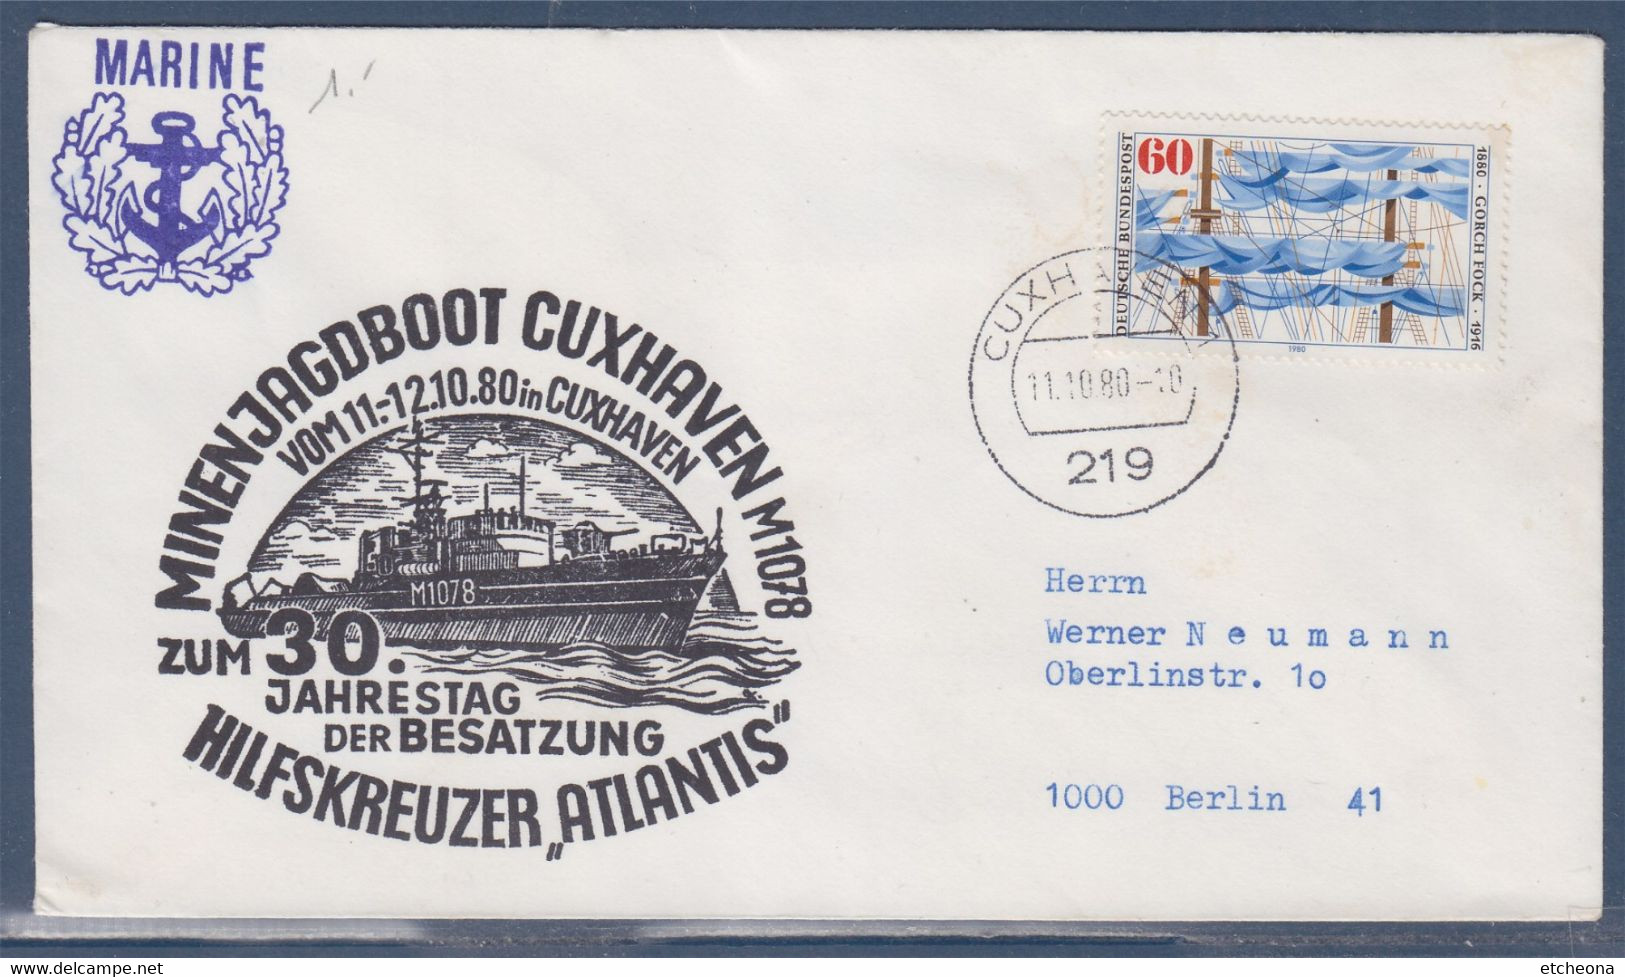 Marine, Chasseur De Mines Cuxhaven, Croiseur Auxiliaire Atlantis Enveloppe 11.10.80 , 1 Timbre, Allemagne - Andere(Zee)